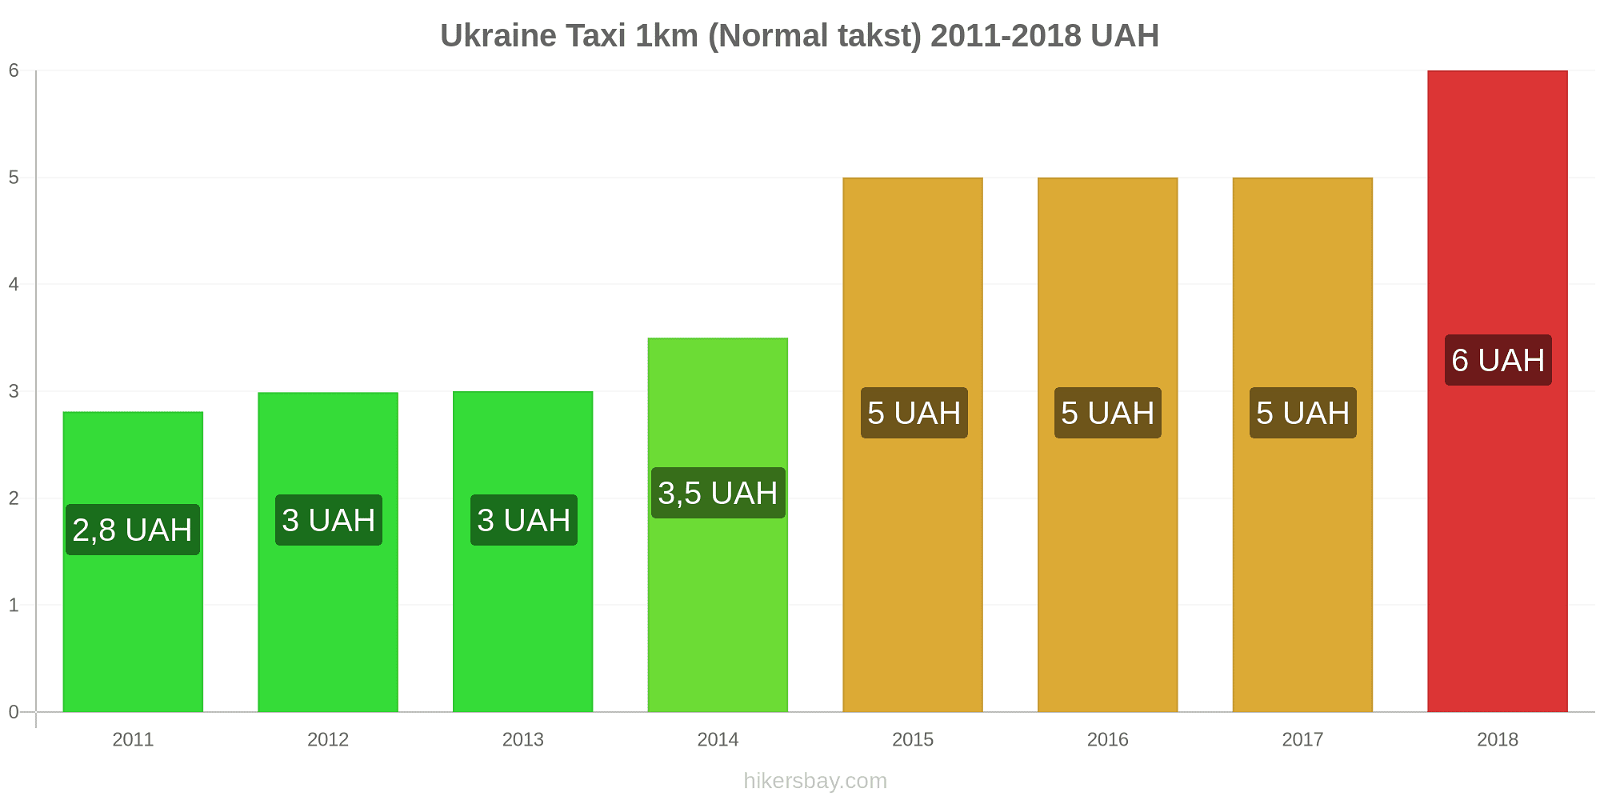 Ukraine prisændringer Taxi 1km (normal takst) hikersbay.com